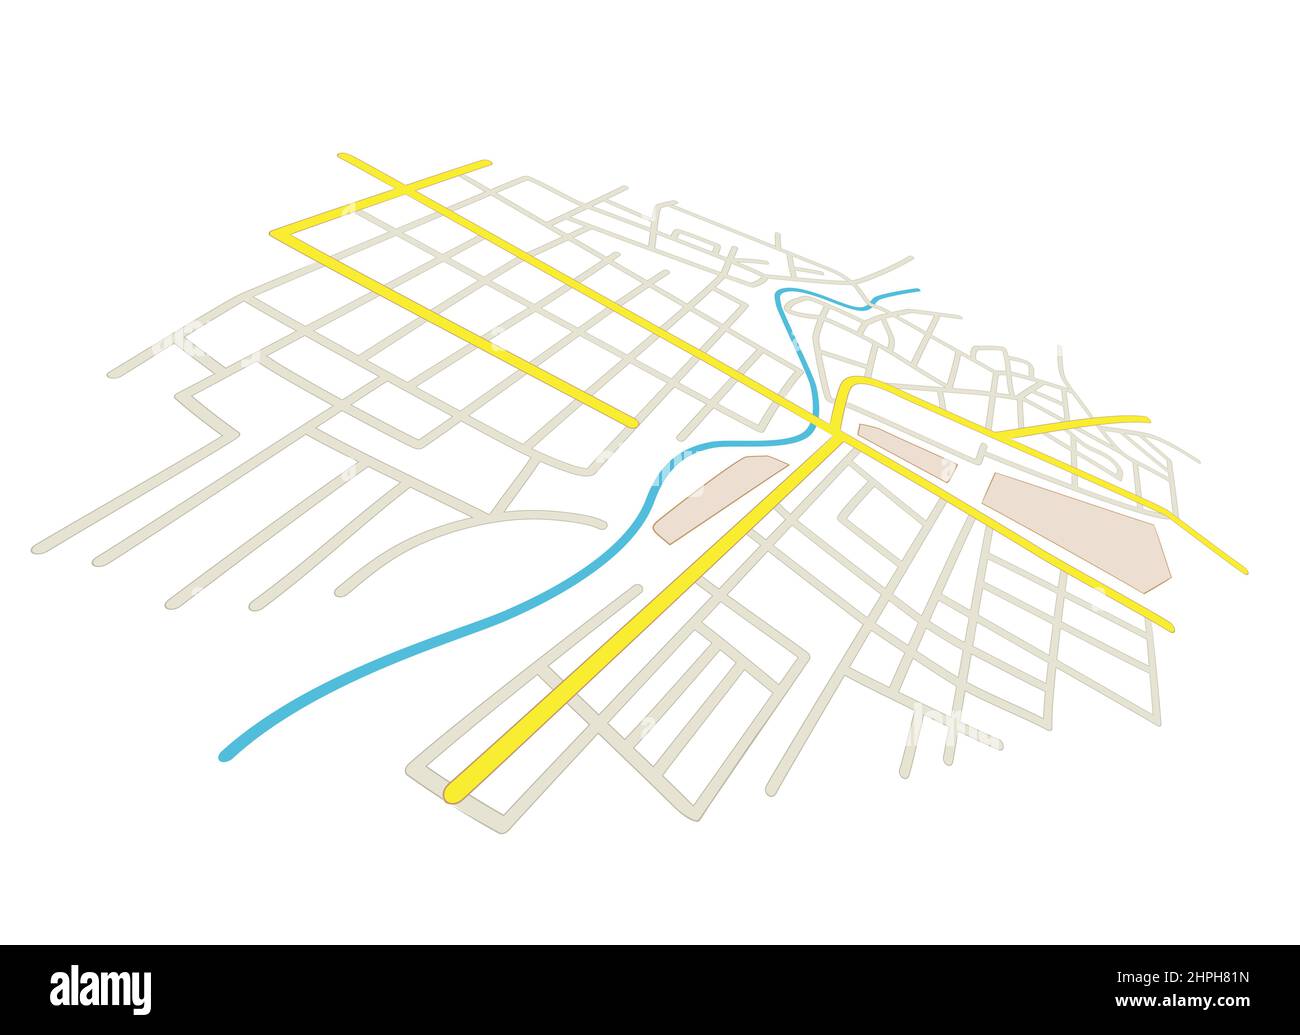 calles en el plano de la ciudad - vector en perspectiva Ilustración del Vector